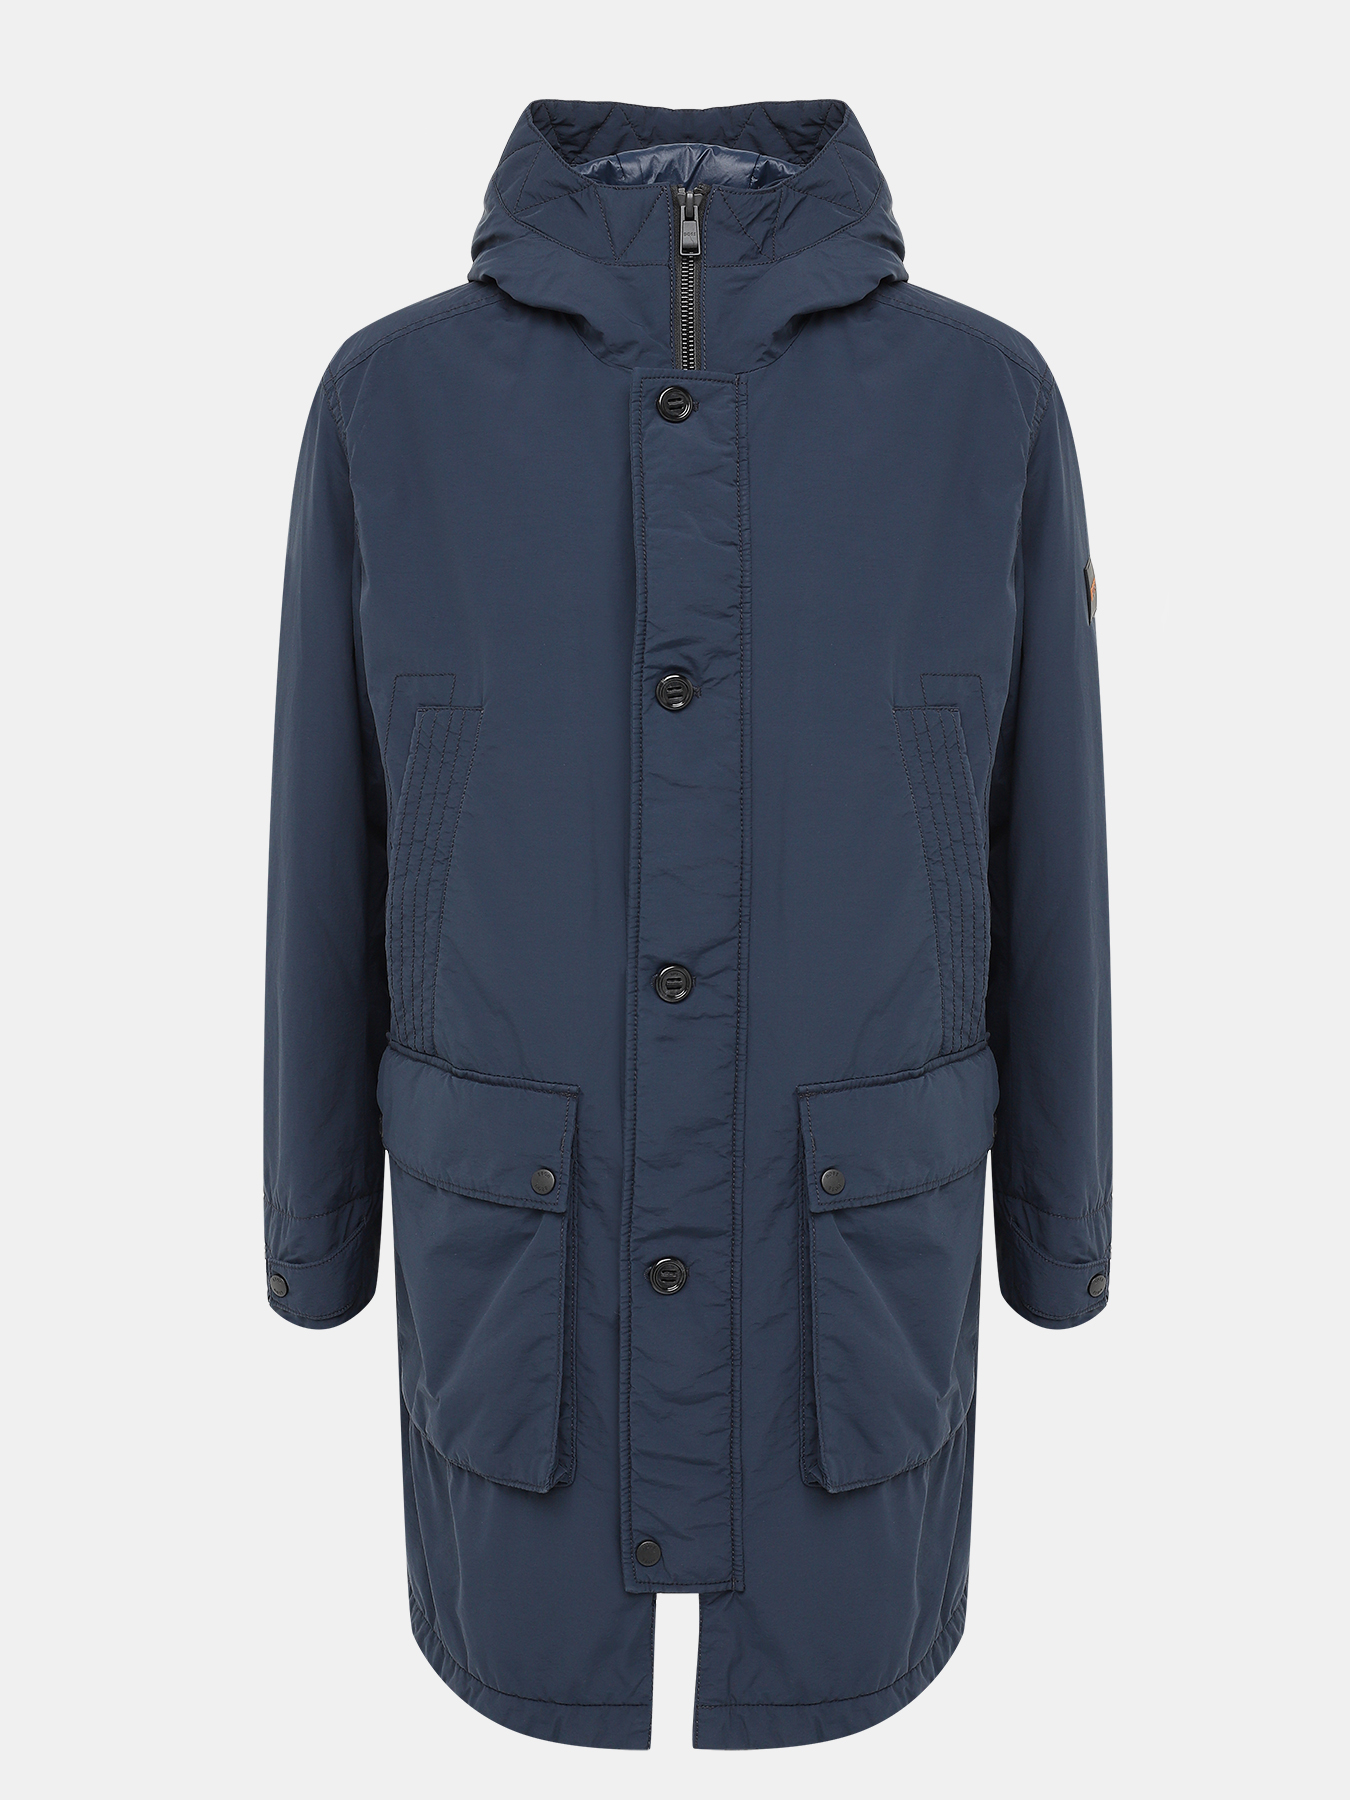 Удлиненная куртка Olgara BOSS 437906-025, цвет темно-синий, размер 48